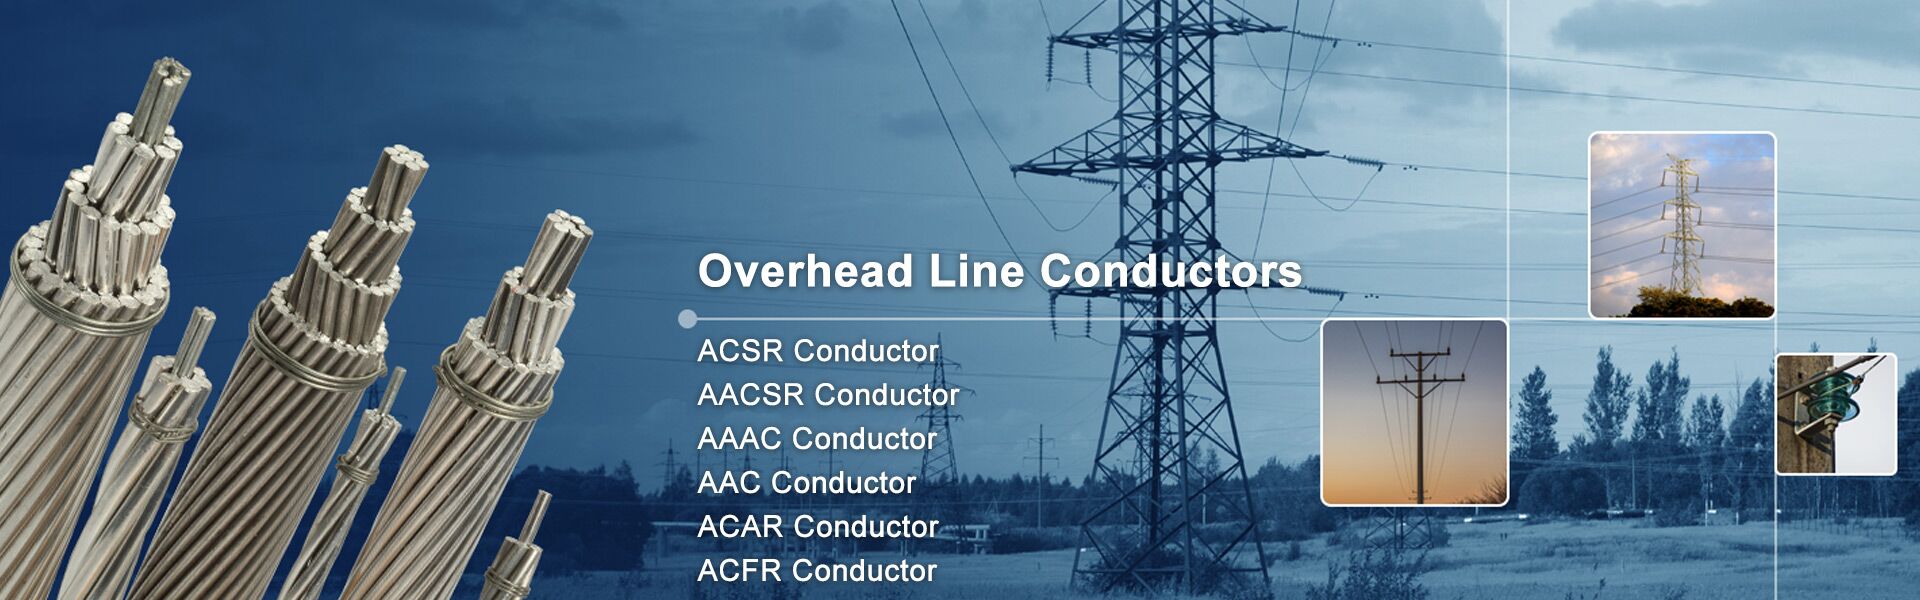 AAAC/AAC Conductor